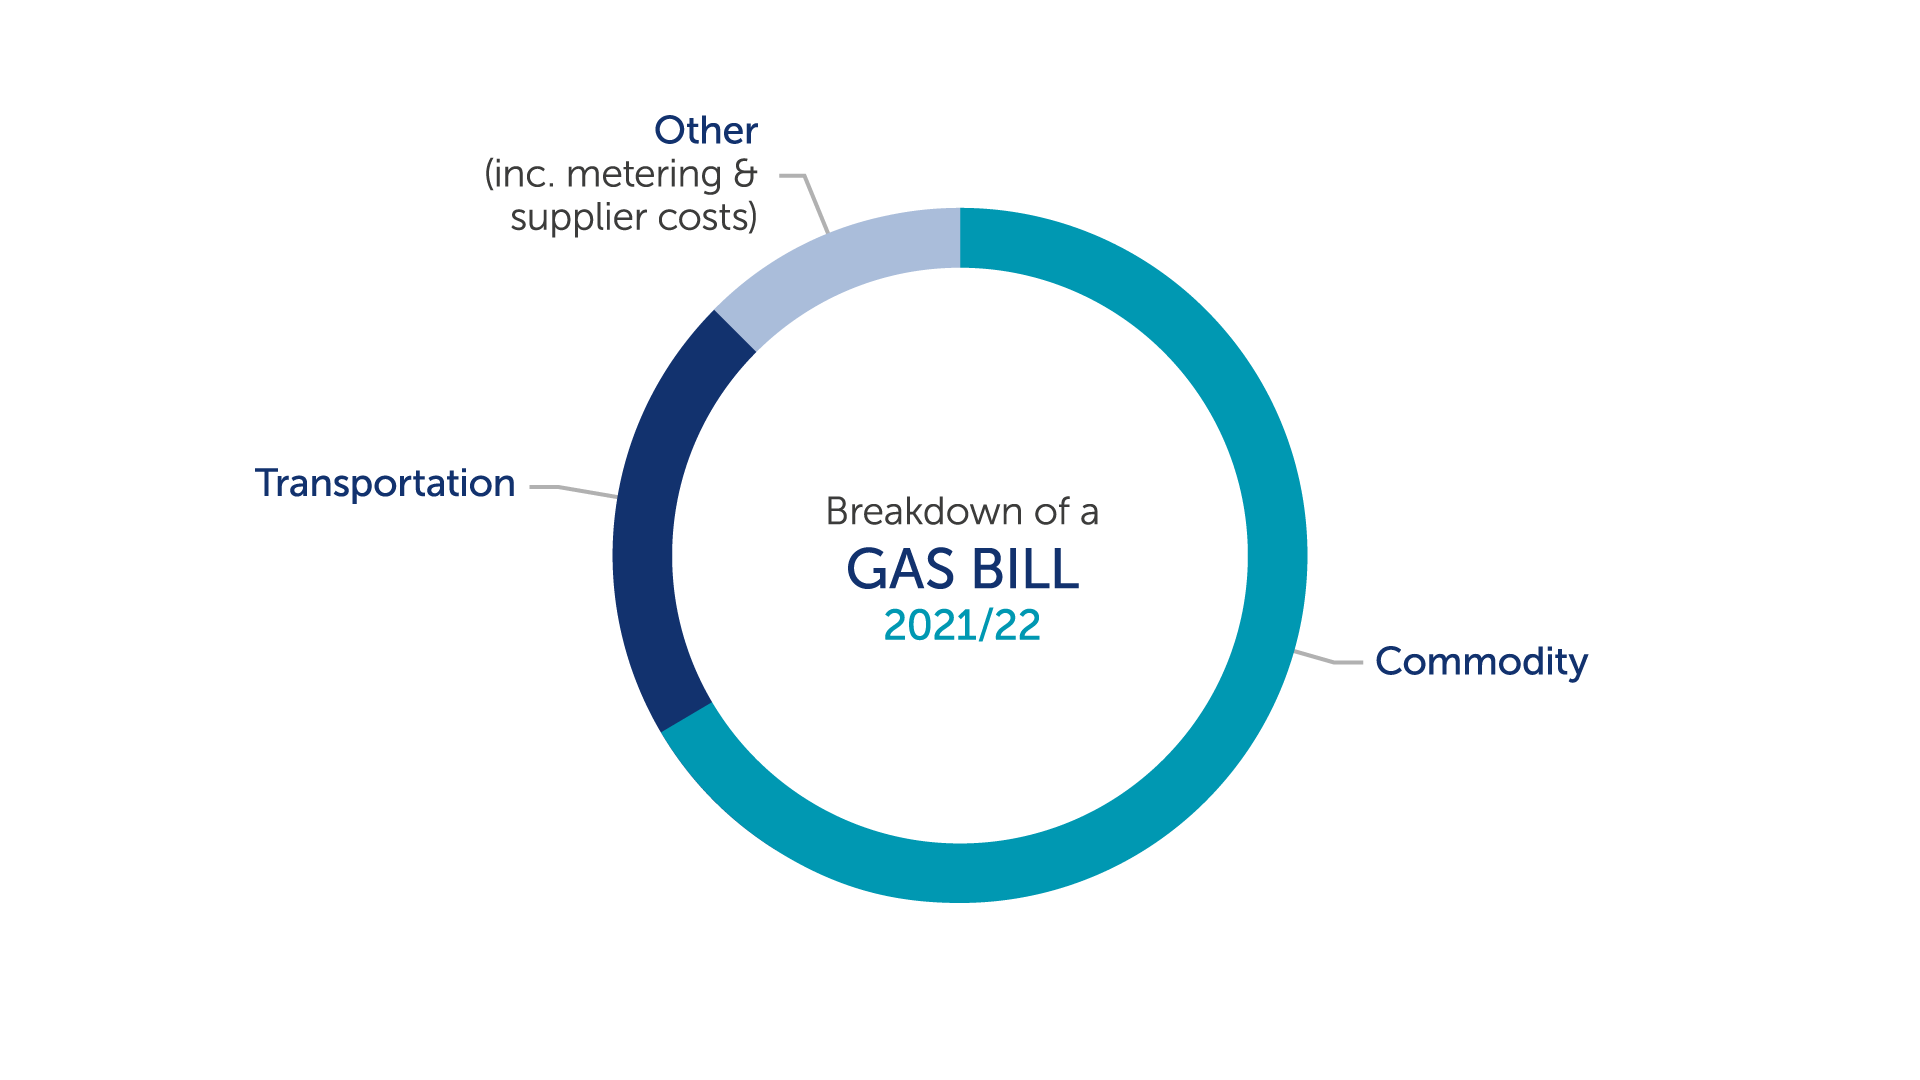 Gas bill breakdown 2021/2022